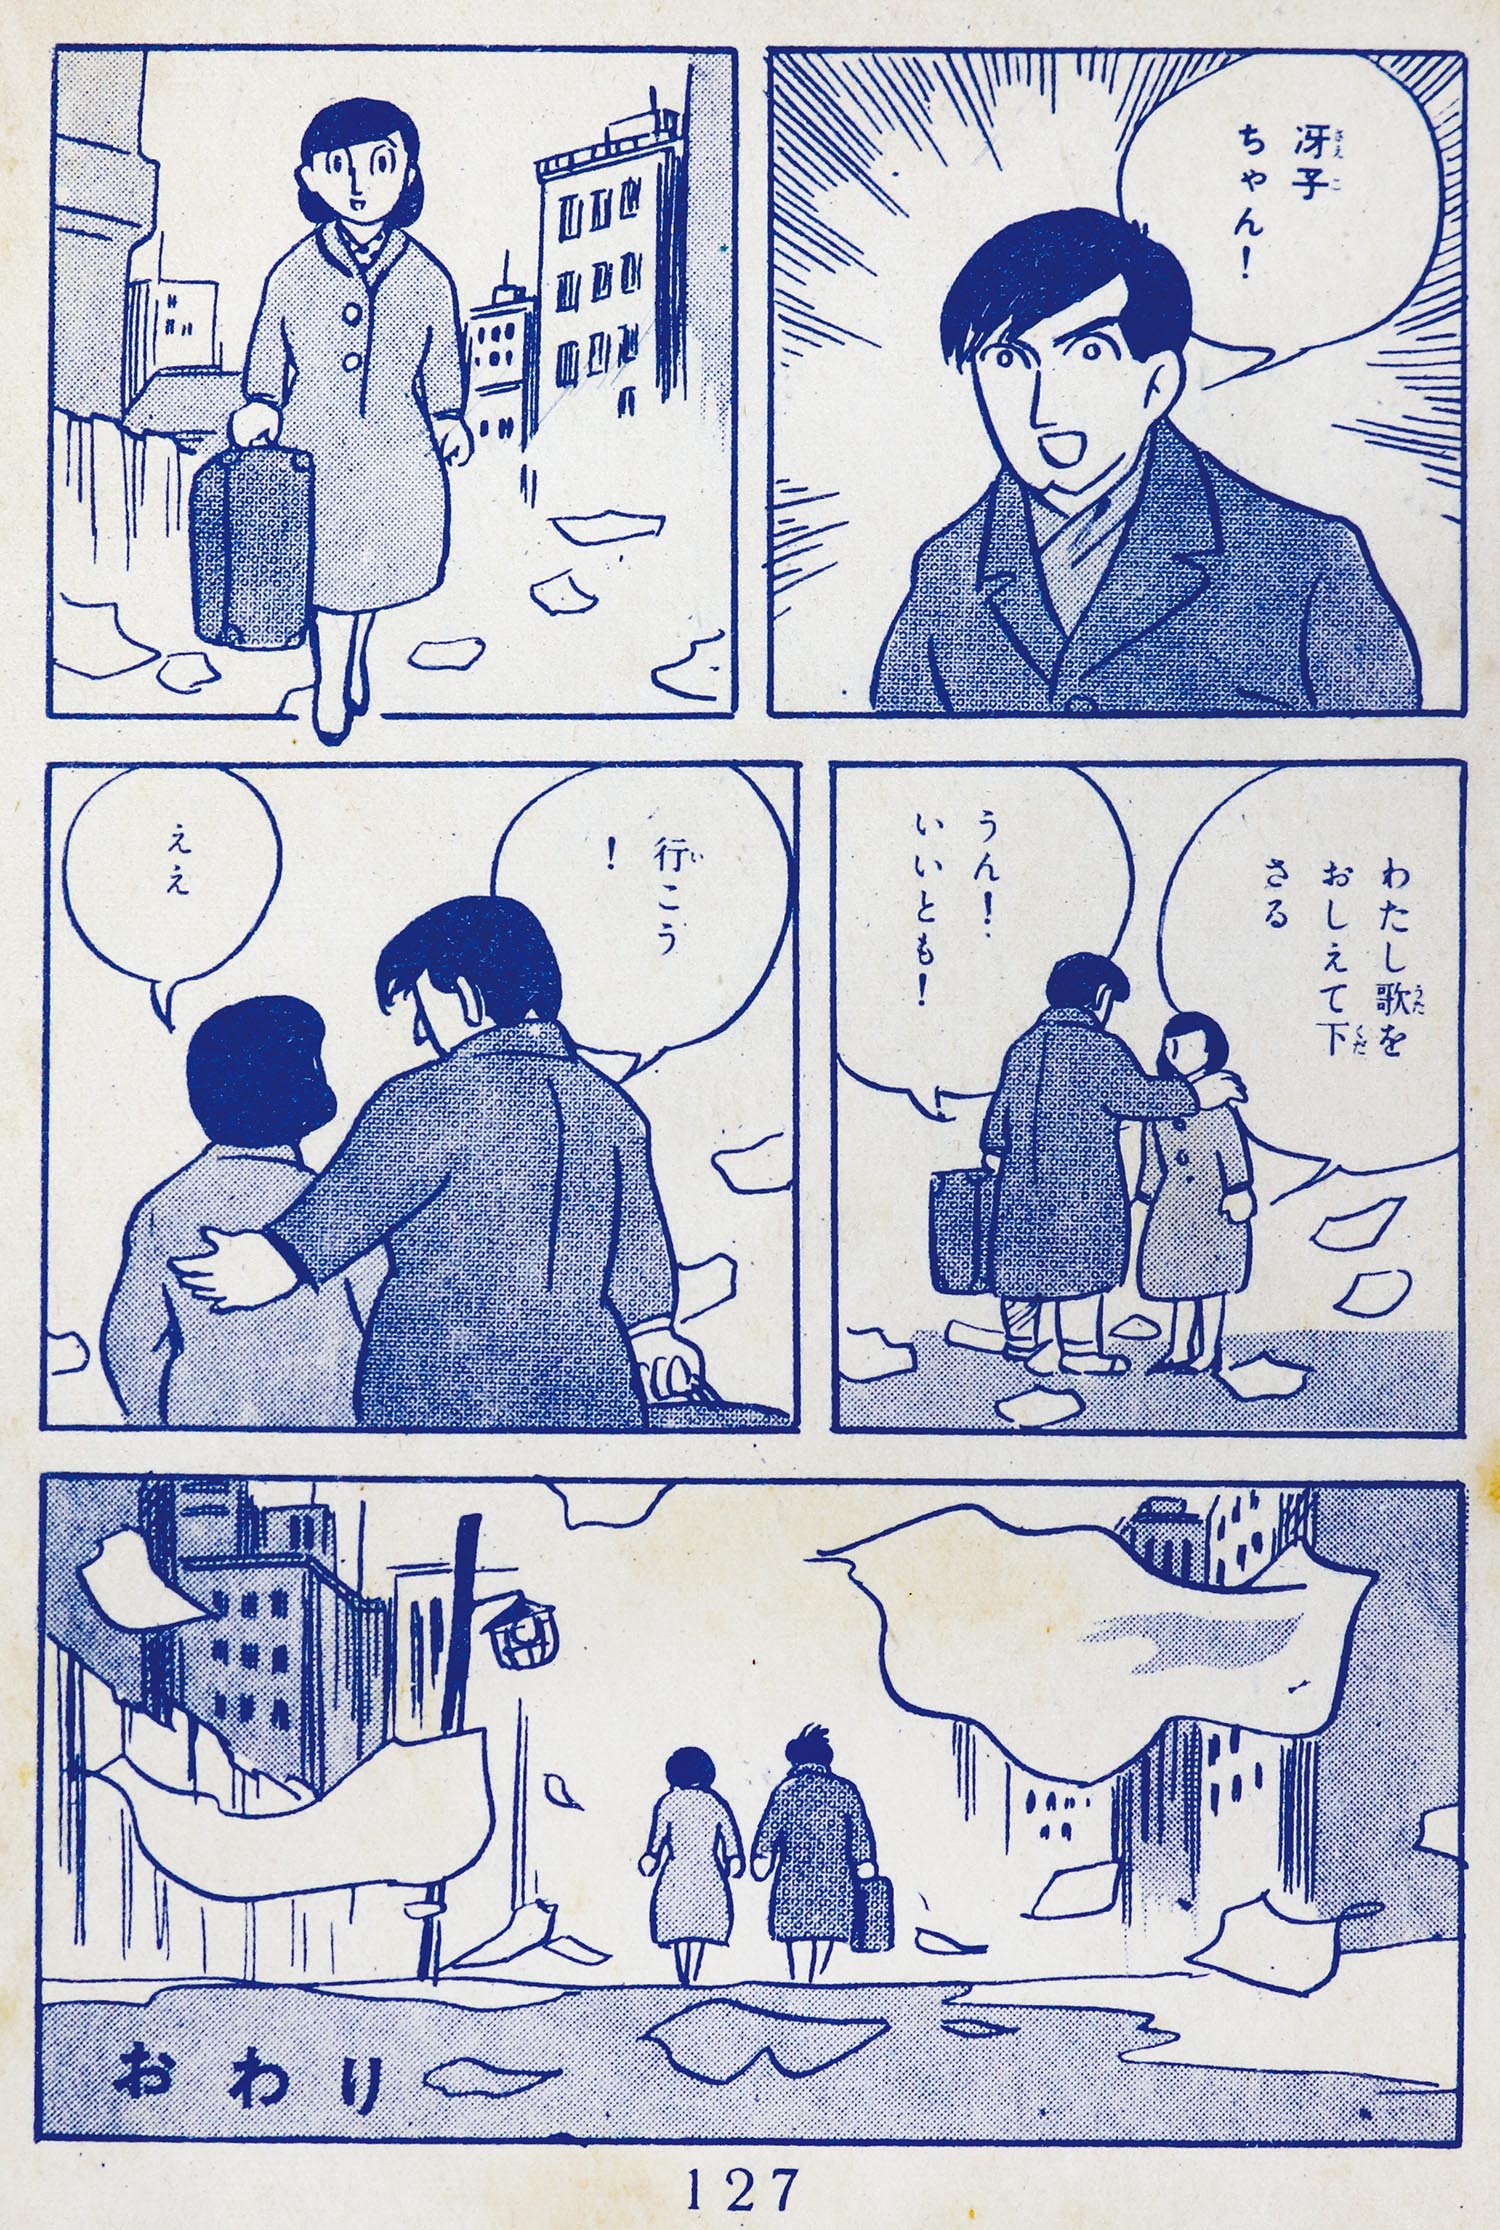 7002］ 日の丸文庫(八興)/辰巳ヨシヒロ「黒い吹雪」